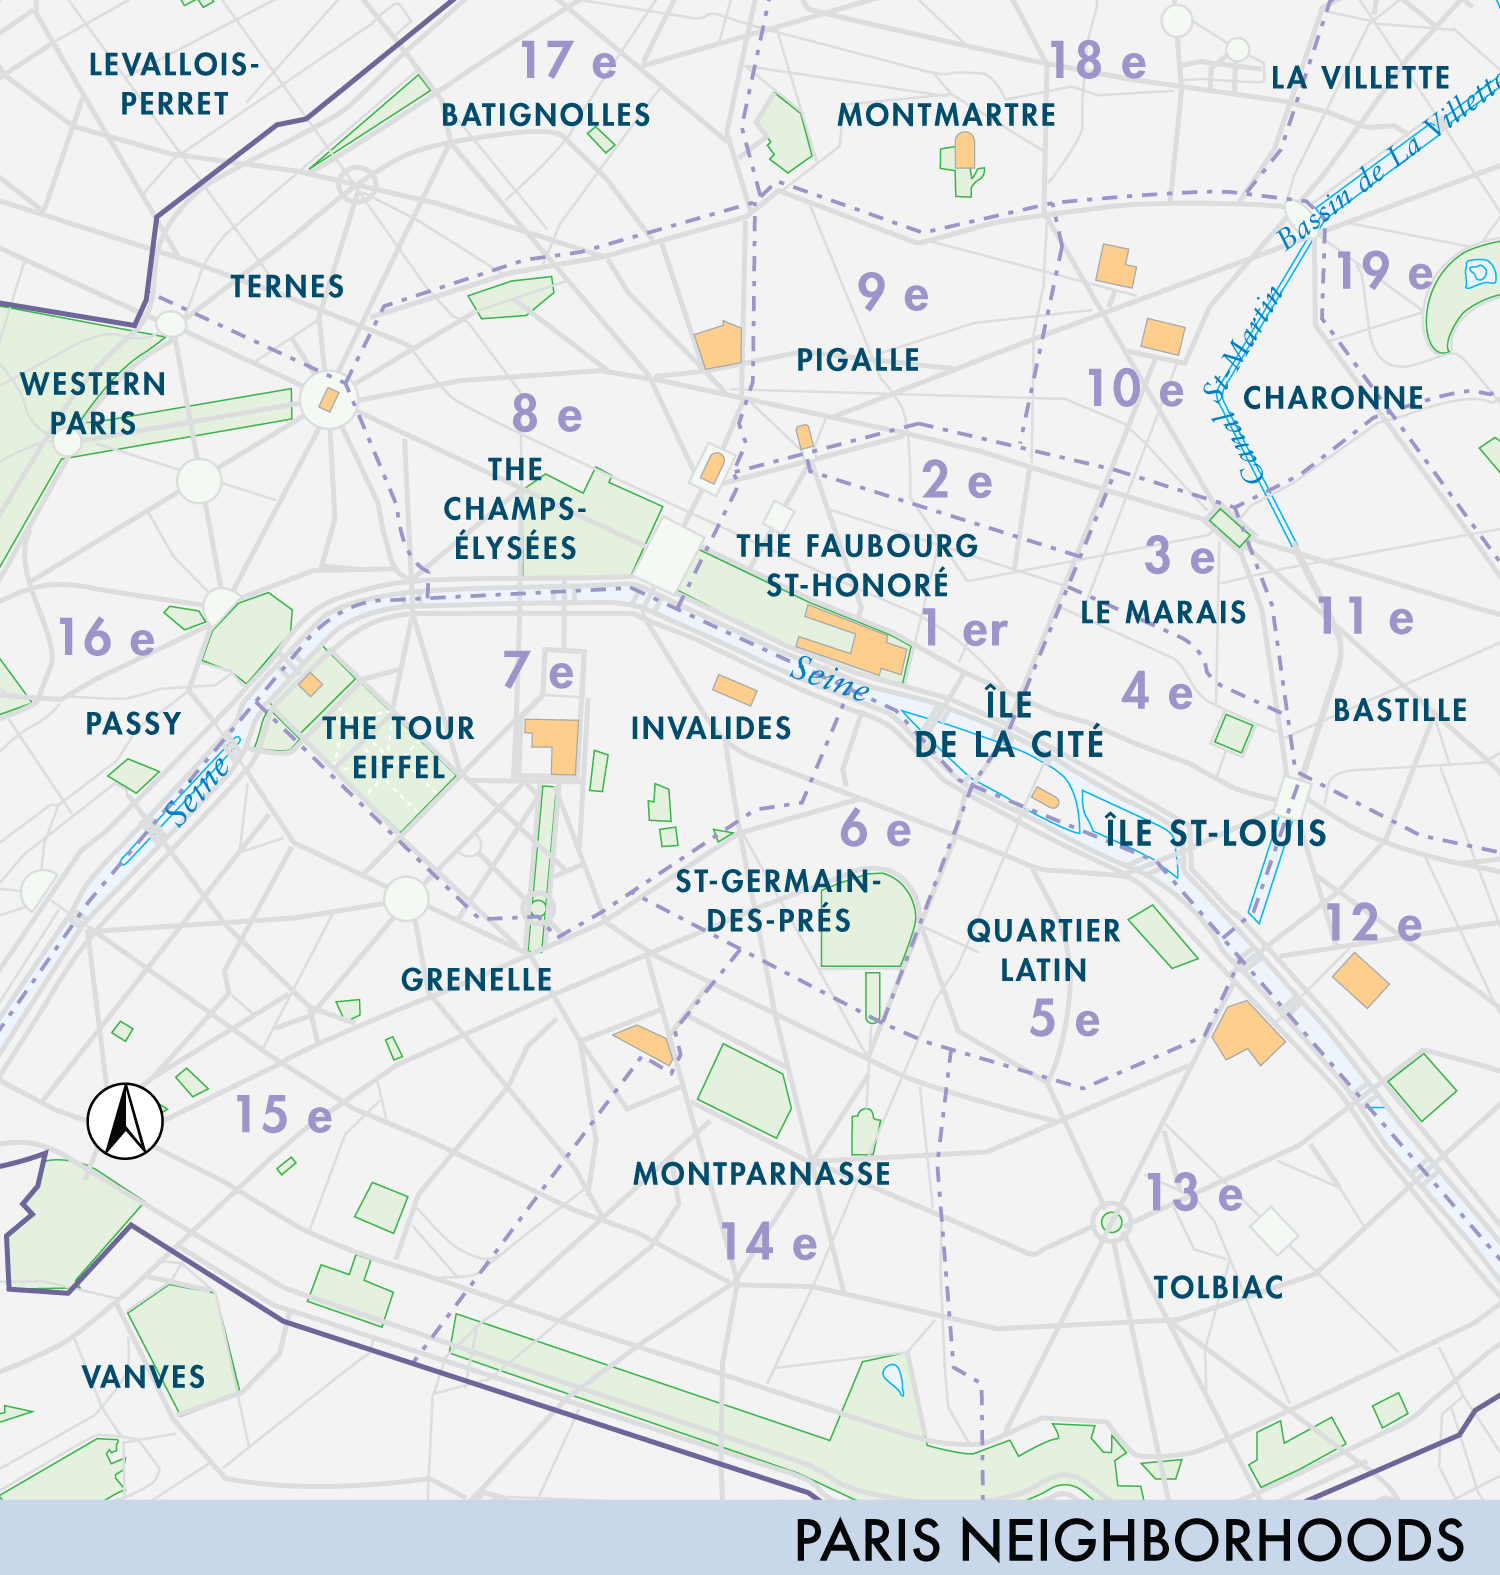 Paris Neighborhoods